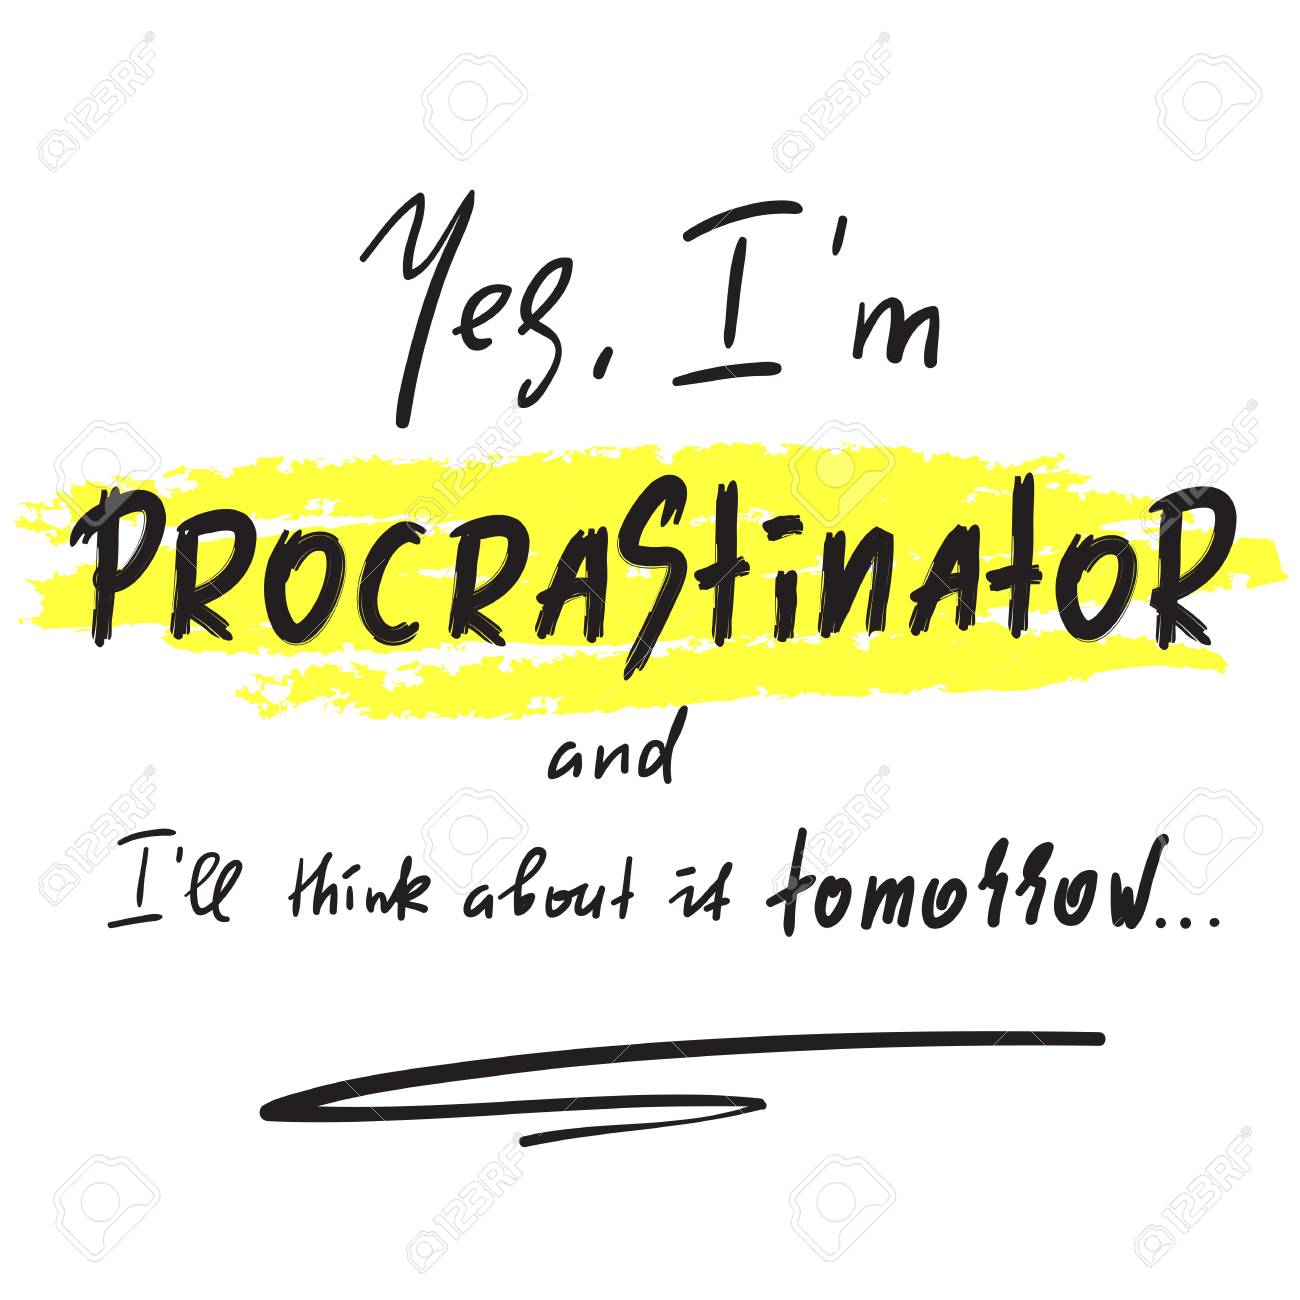 procrastinator.jpg